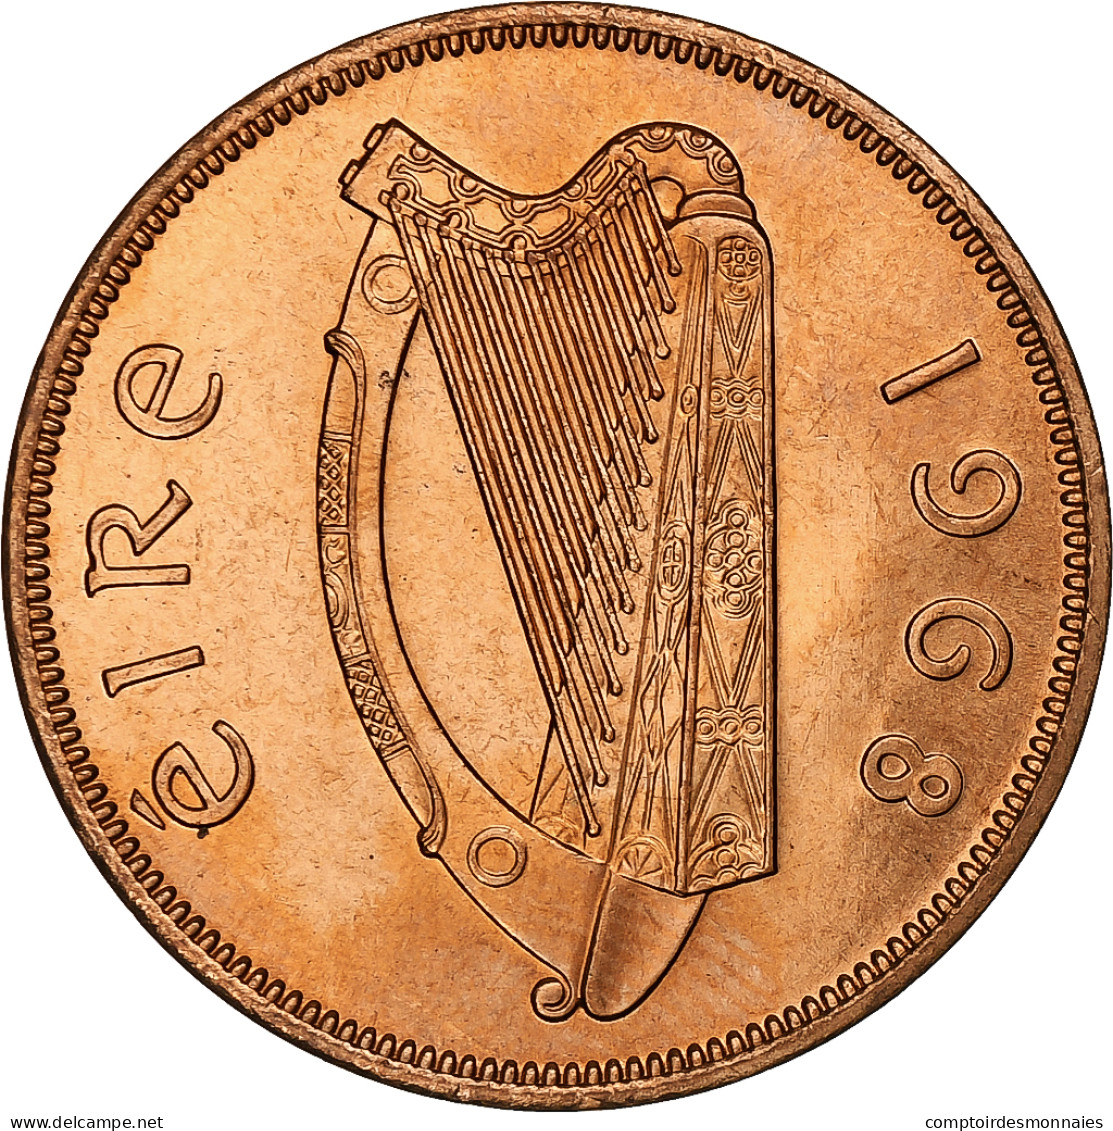 République D'Irlande, Penny, 1968, Bronze, SPL, KM:11 - Irlande